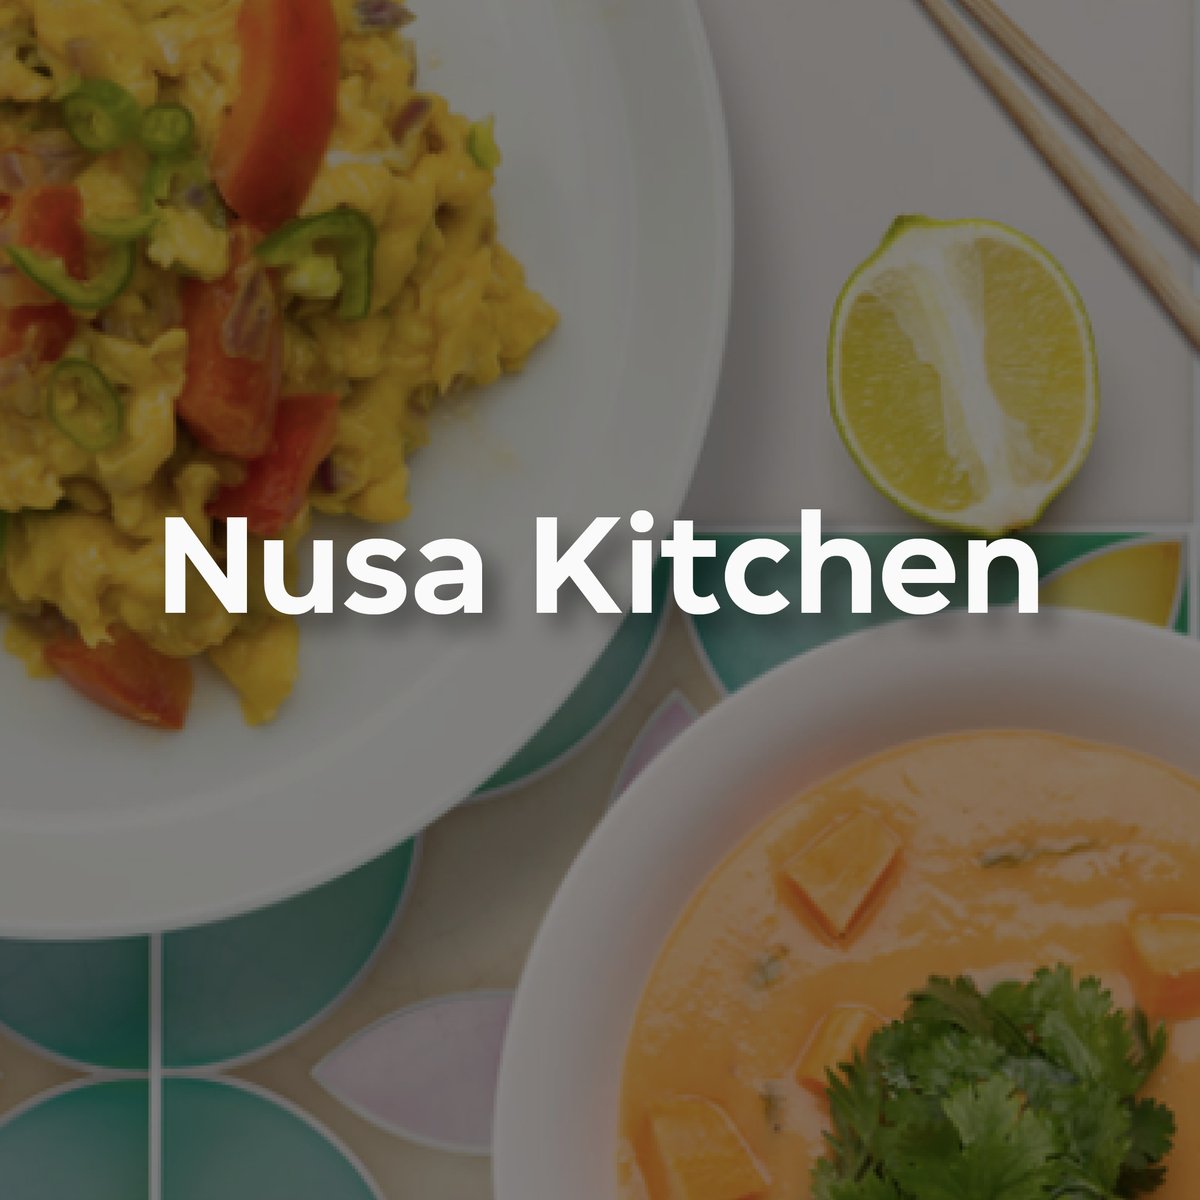 nusa kitchen-1